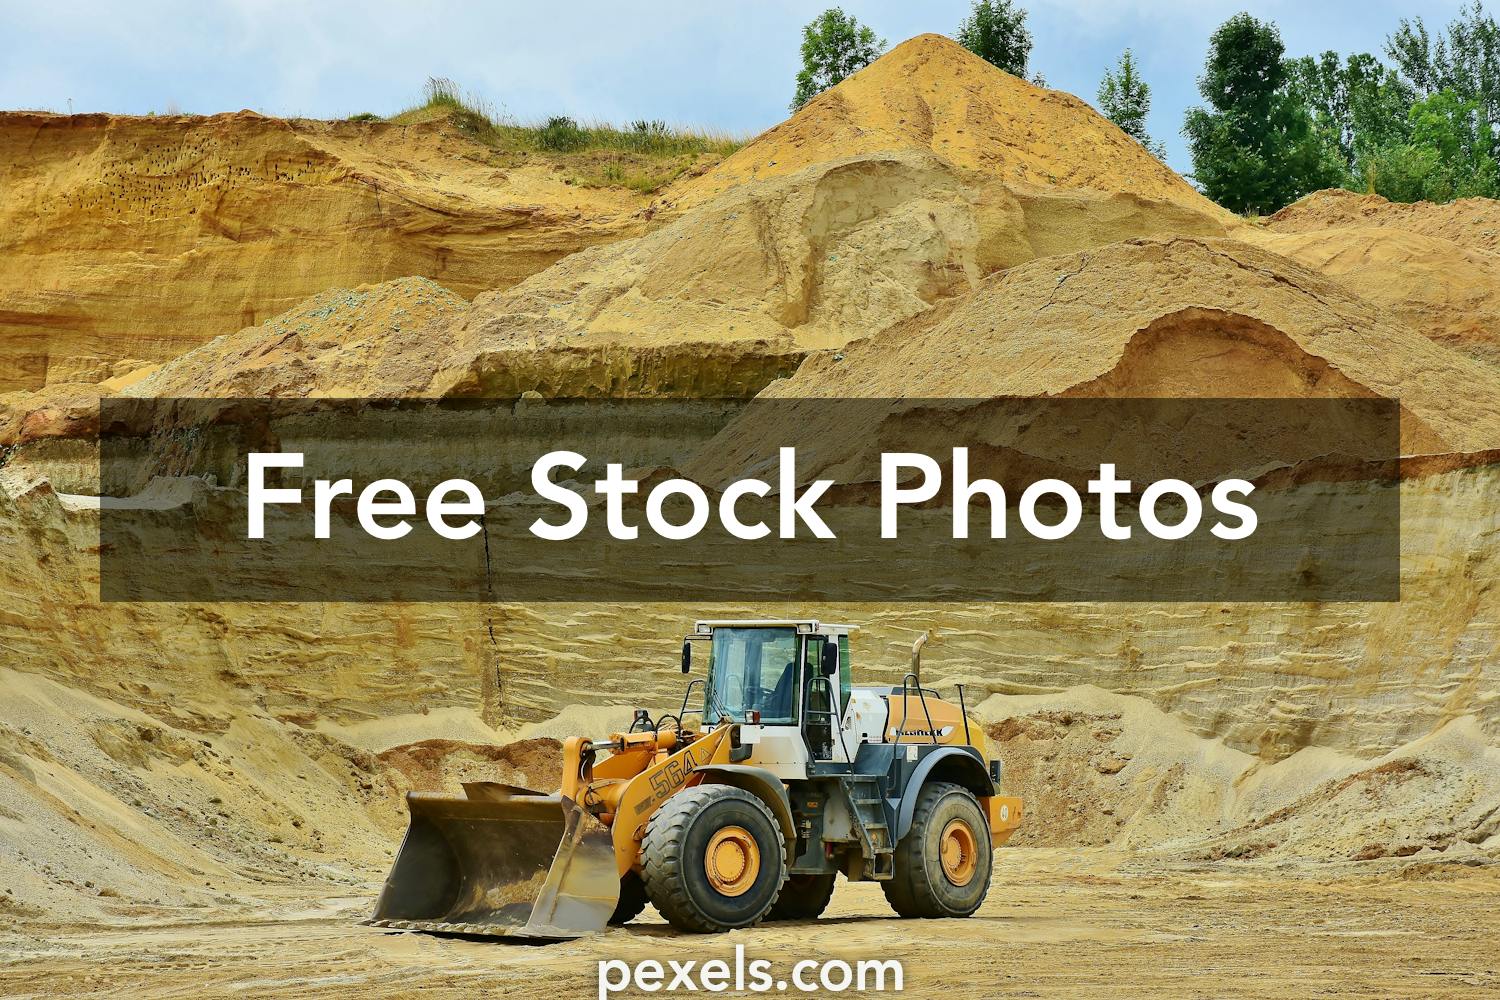 20 Beautiful Pit Photos Pexels Free Stock Photos Images, Photos, Reviews